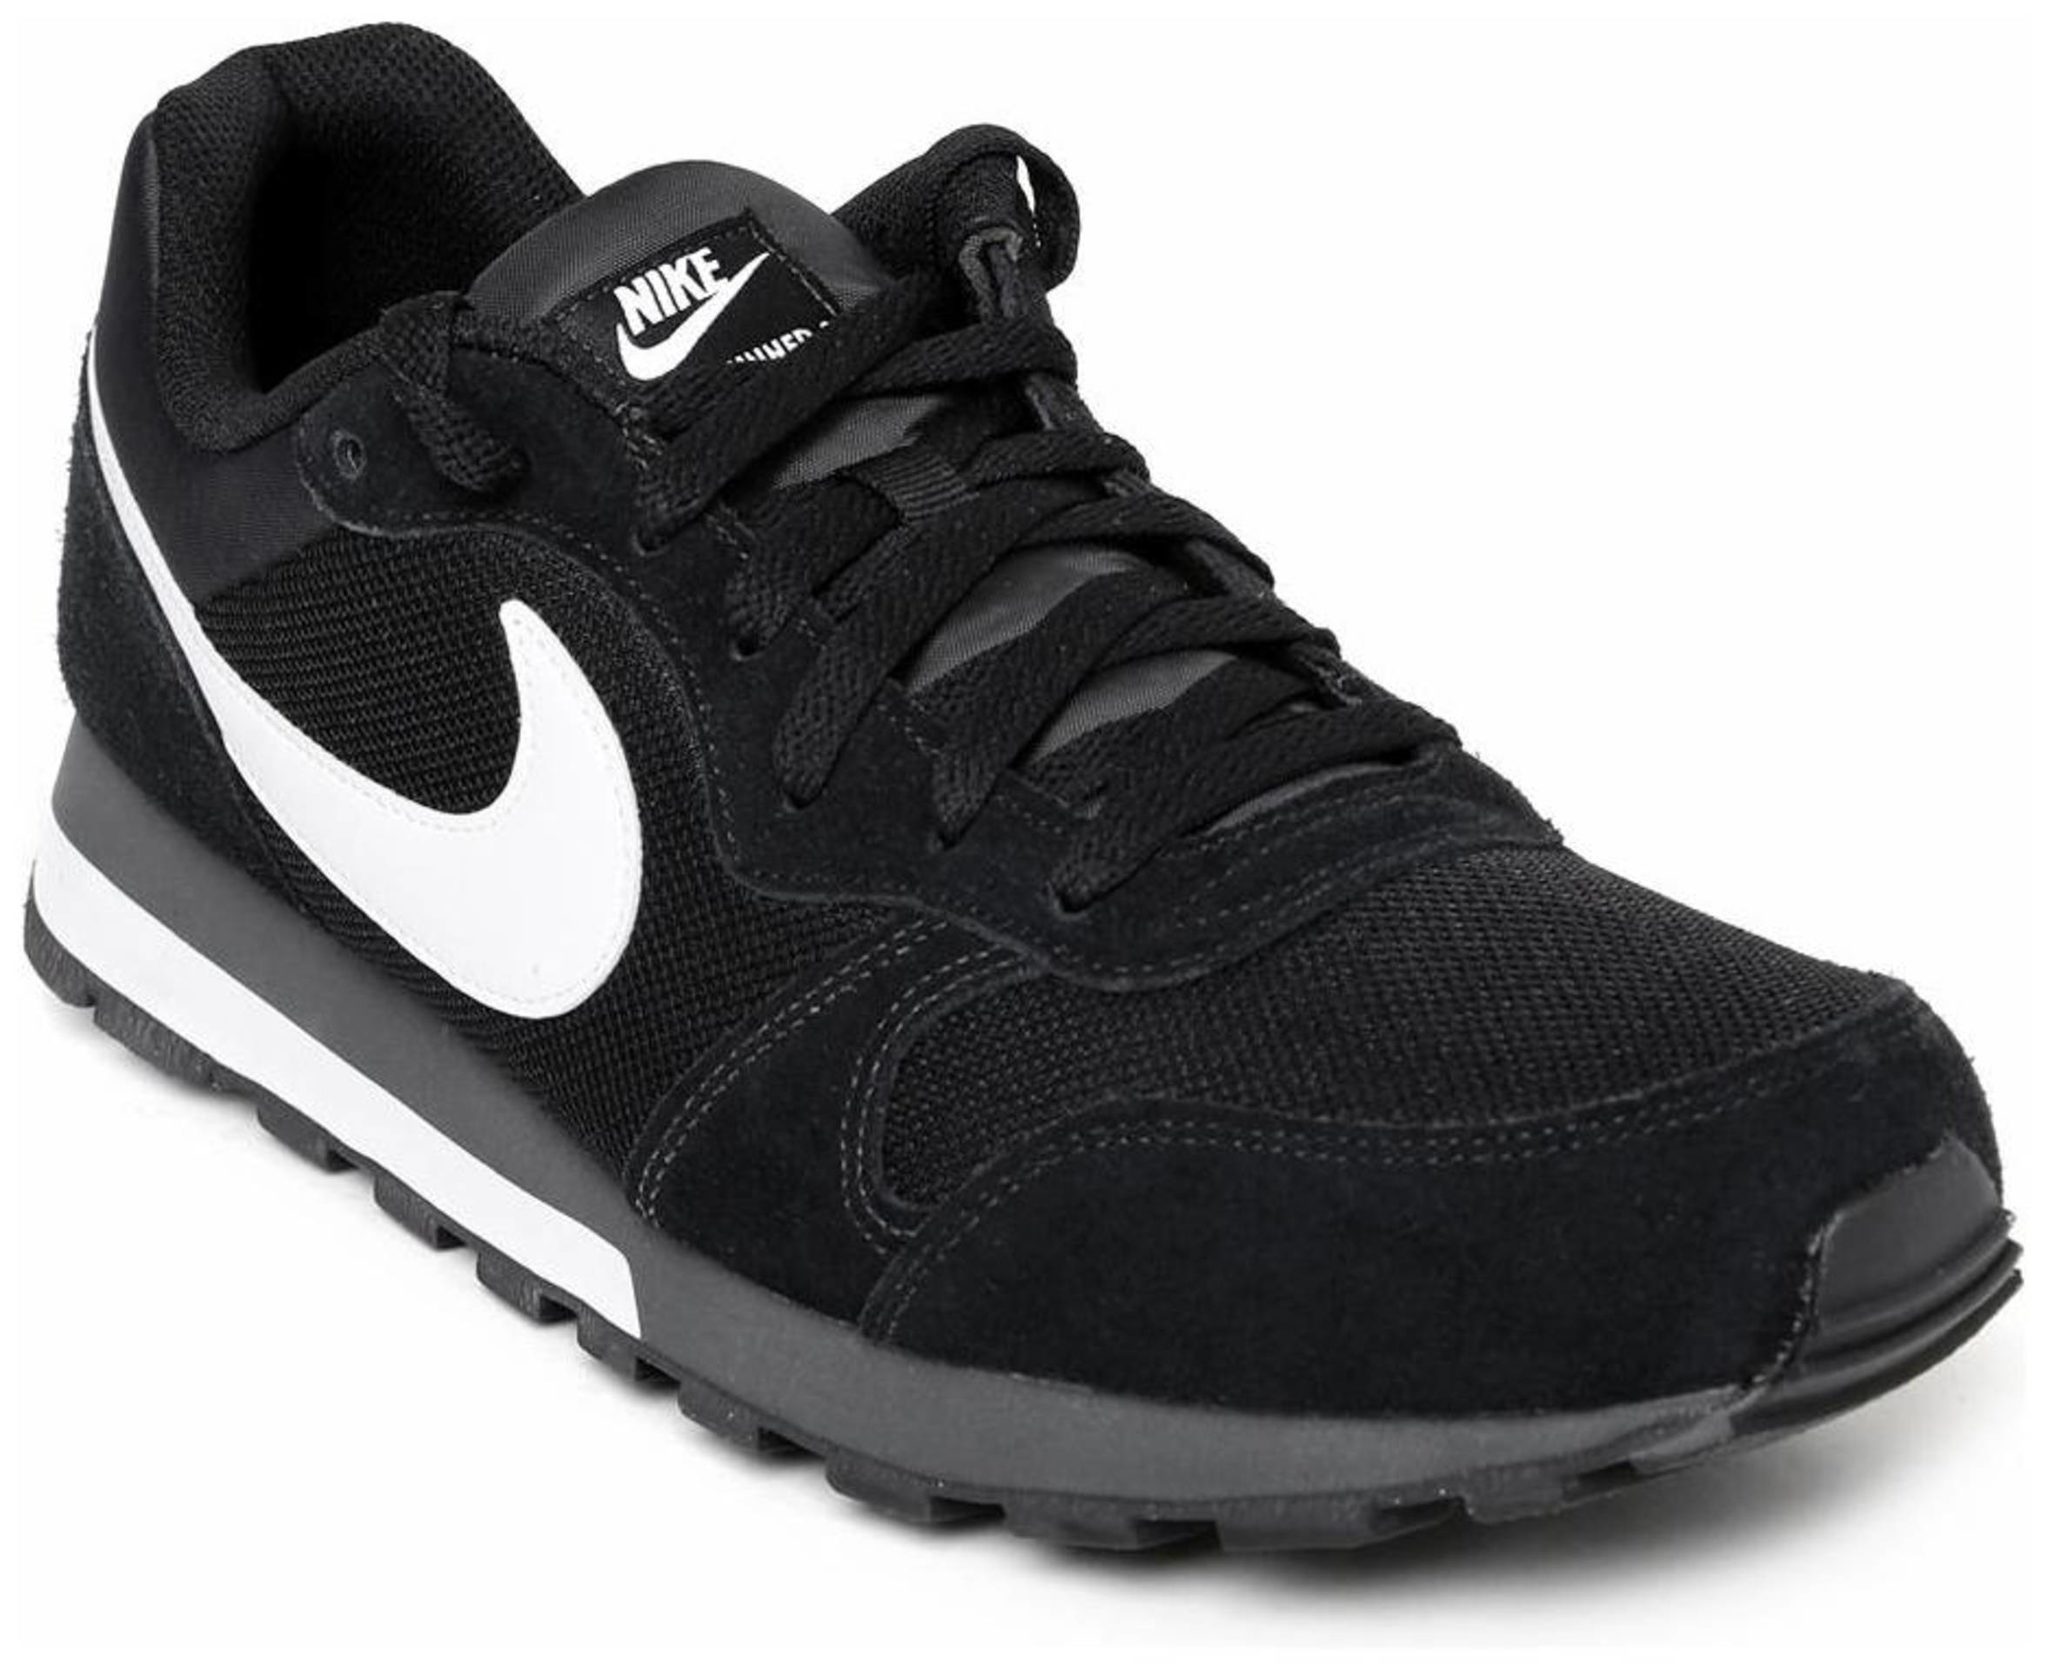 Buy Nike Md Runner 2 Black Men'S Running Shoes Online @ â¹5795 from ShopClues